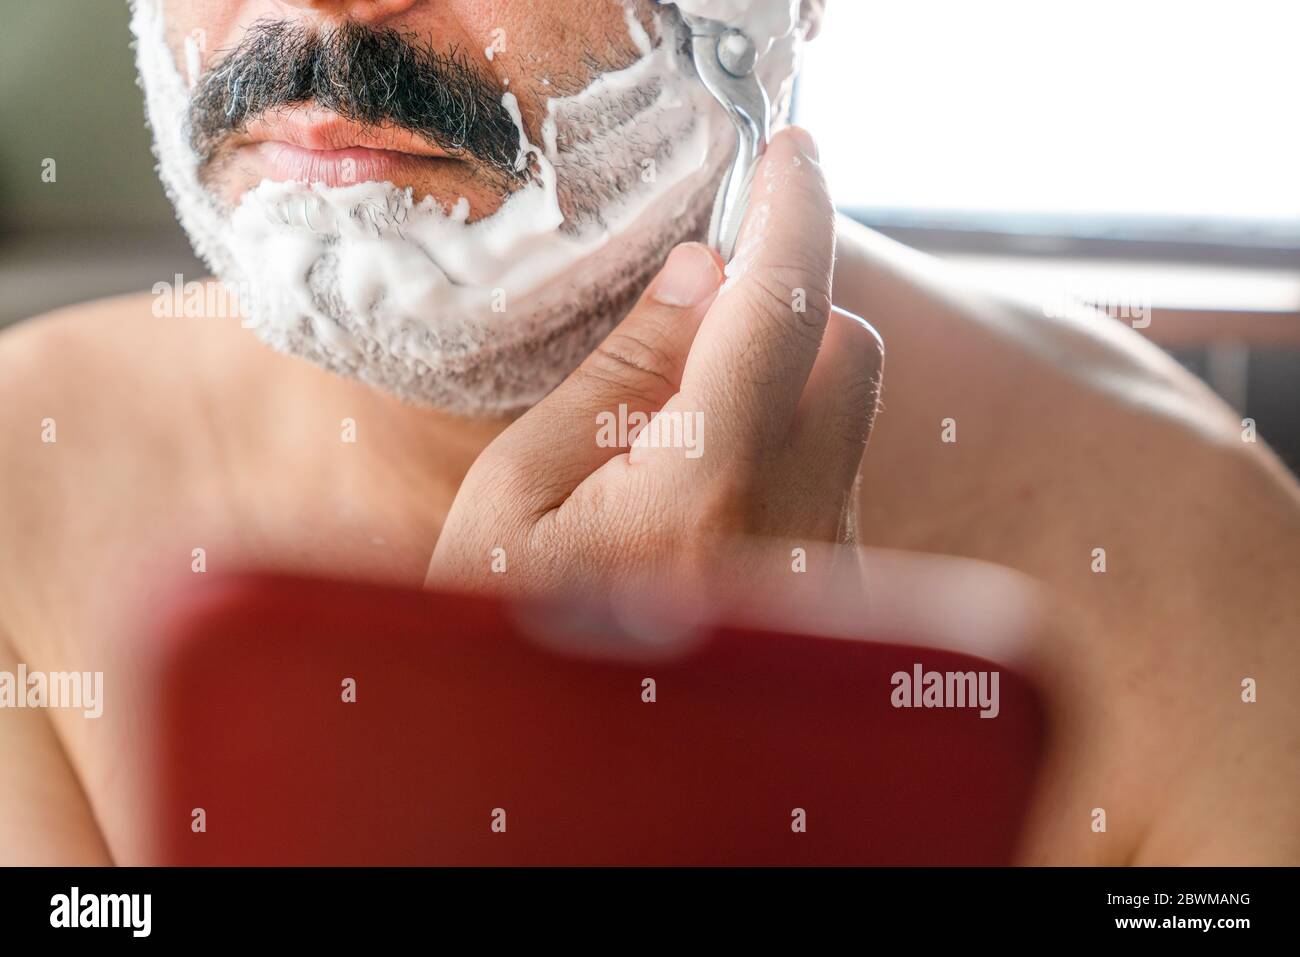 Porträt eines beschäftigten und abgelenkten jungen Mannes, der sich während der SMS auf seinem Smartphone den Bart rasieren lässt. Der Mensch nutzt das Smartphone als Spiegel, wenn er rasiert. Stockfoto